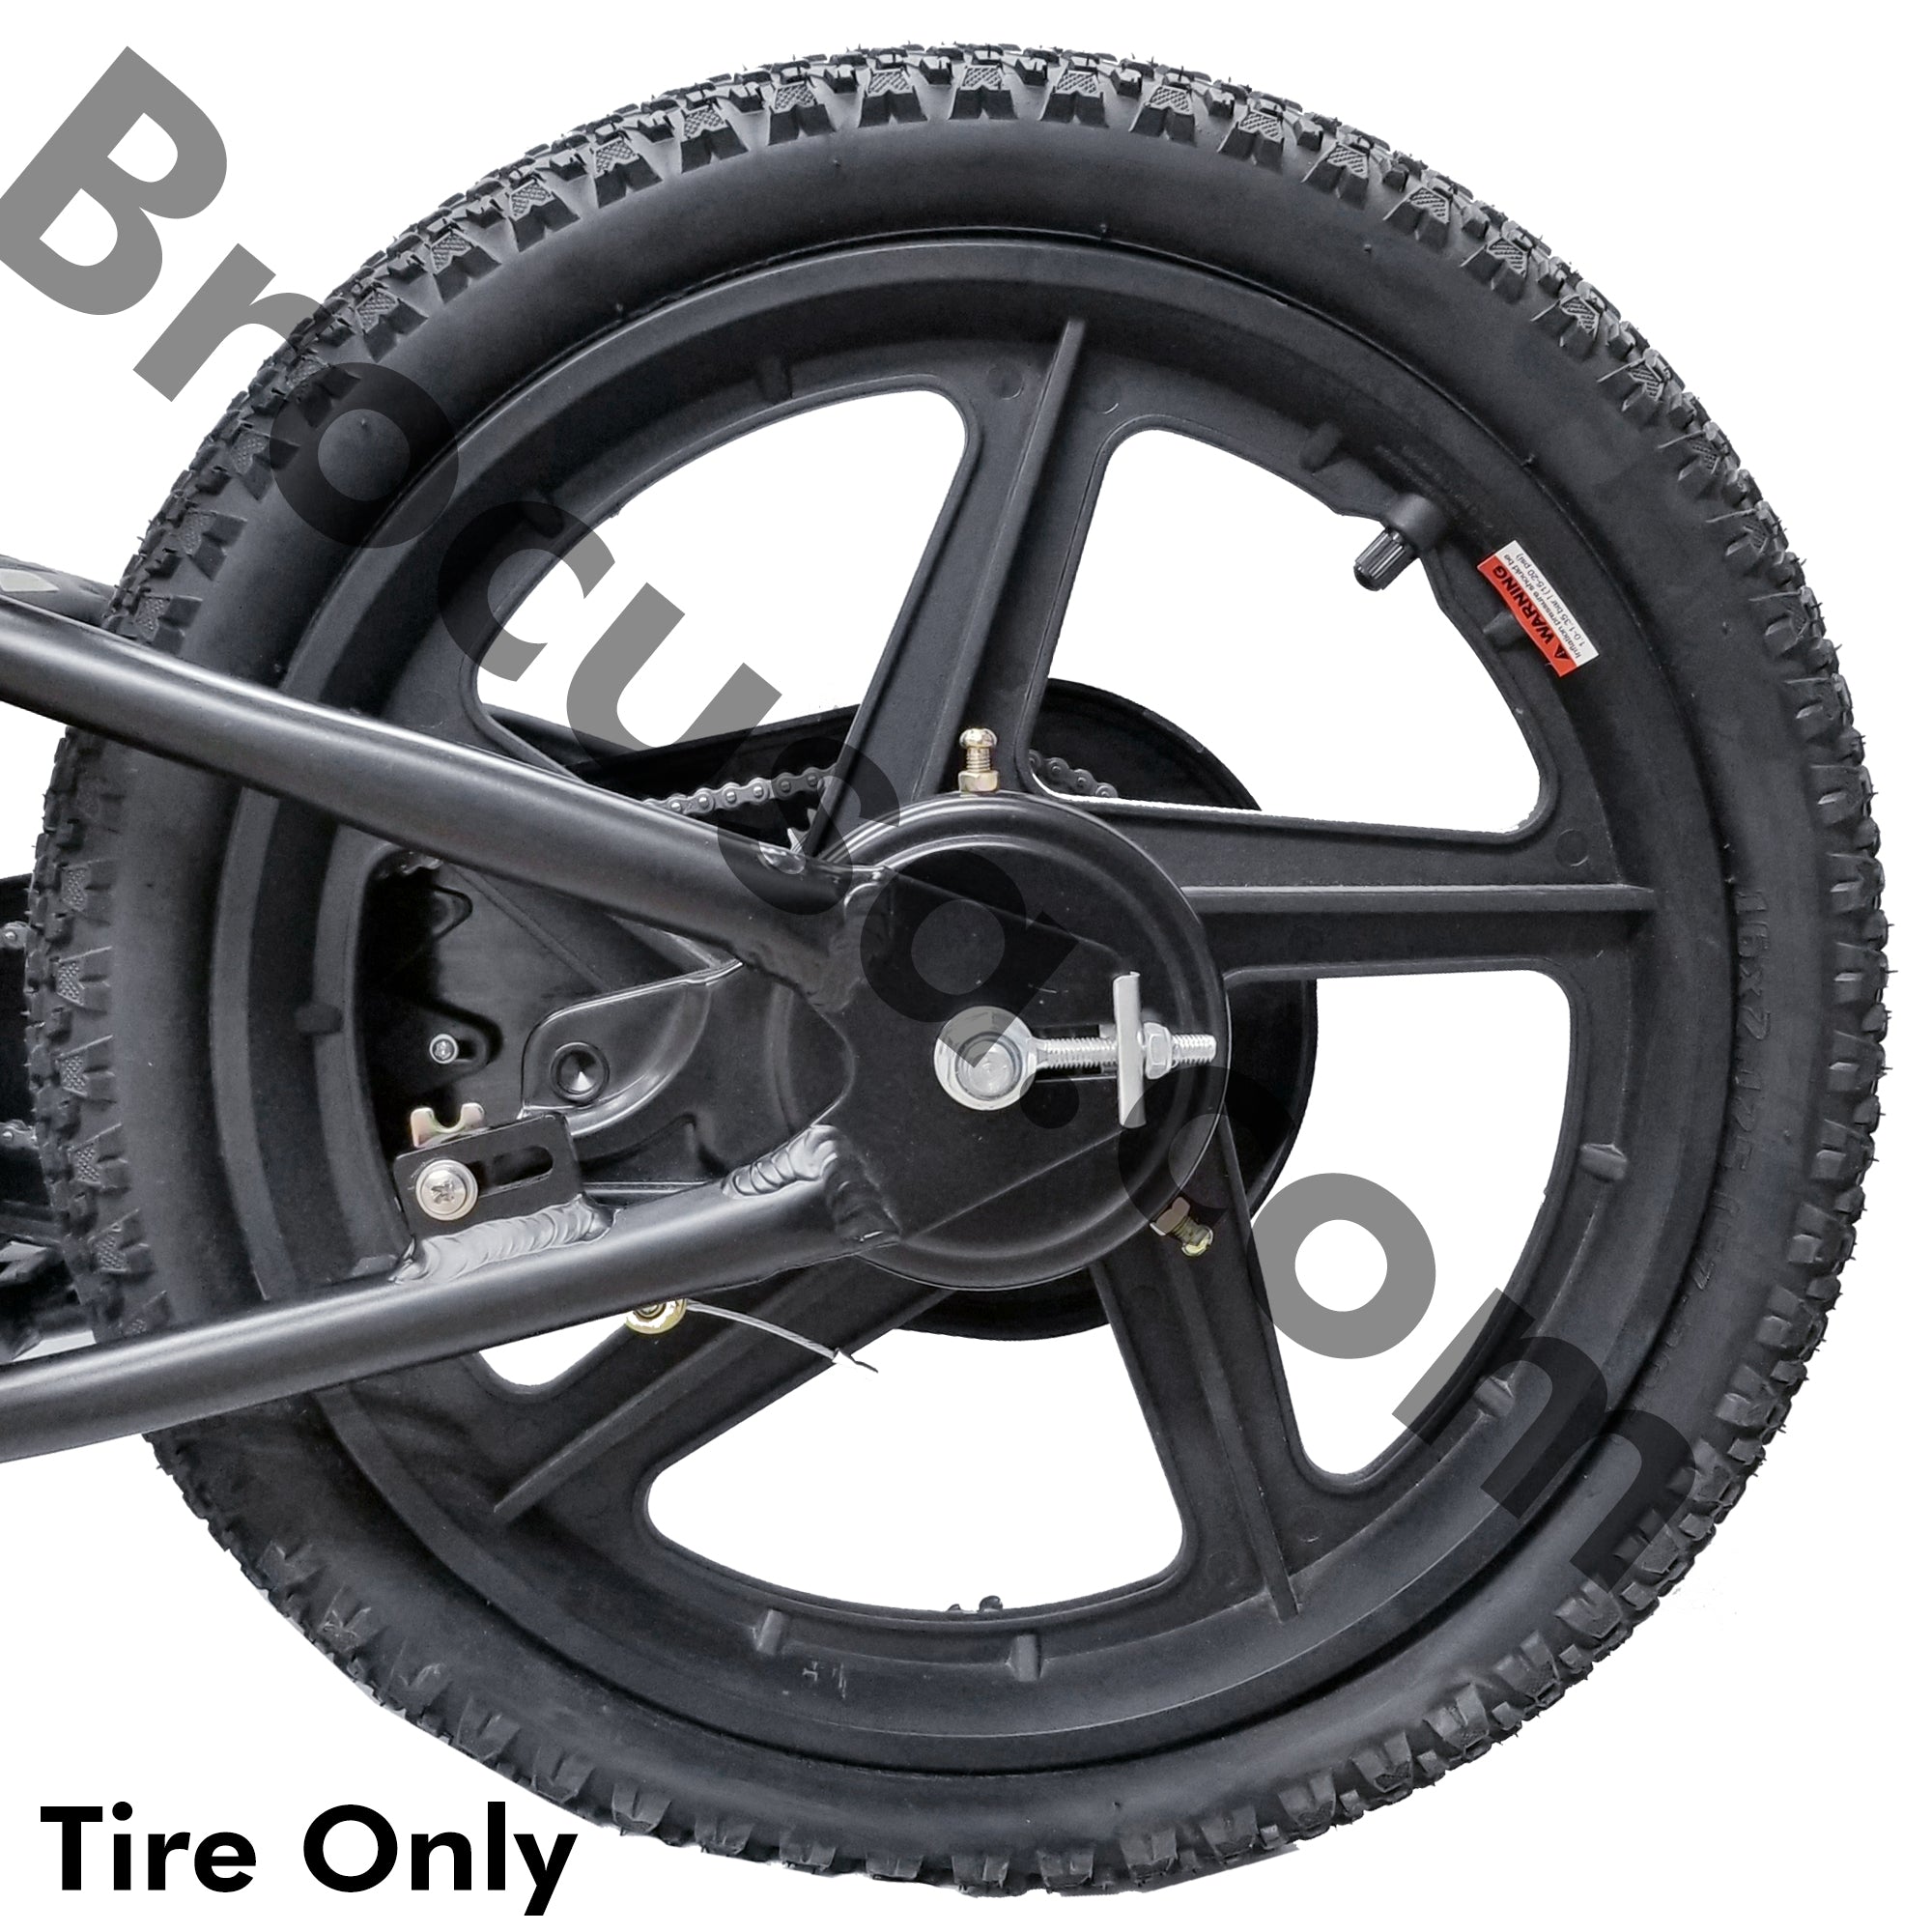 BROCUSA Powered Balance e-bike 12"-16" Pair of tires | Parts